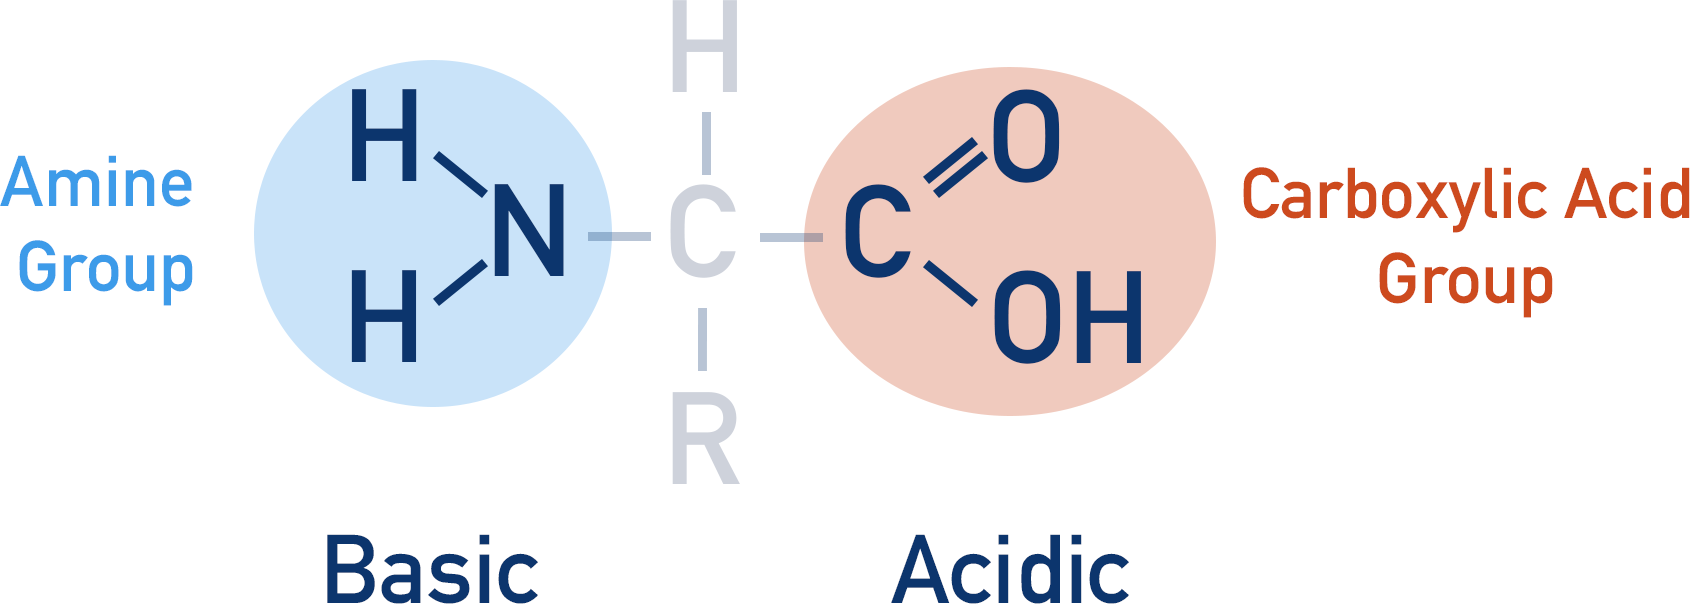 amino acid amine group basic carboxylic acid acidic